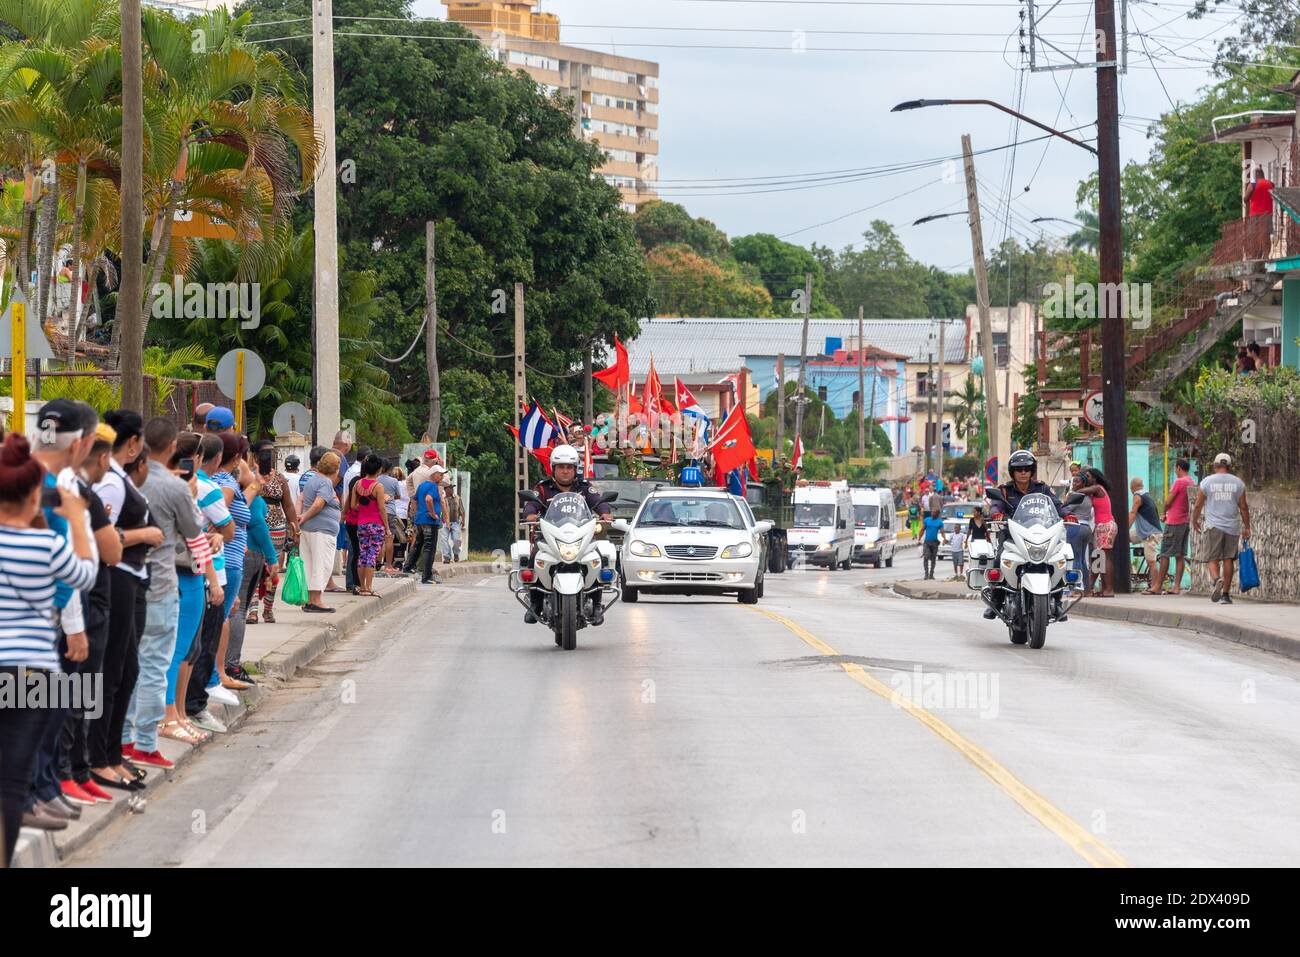 Victory Caravan entering the city through the Central Road, Santa Clara, Cuba Stock Photo